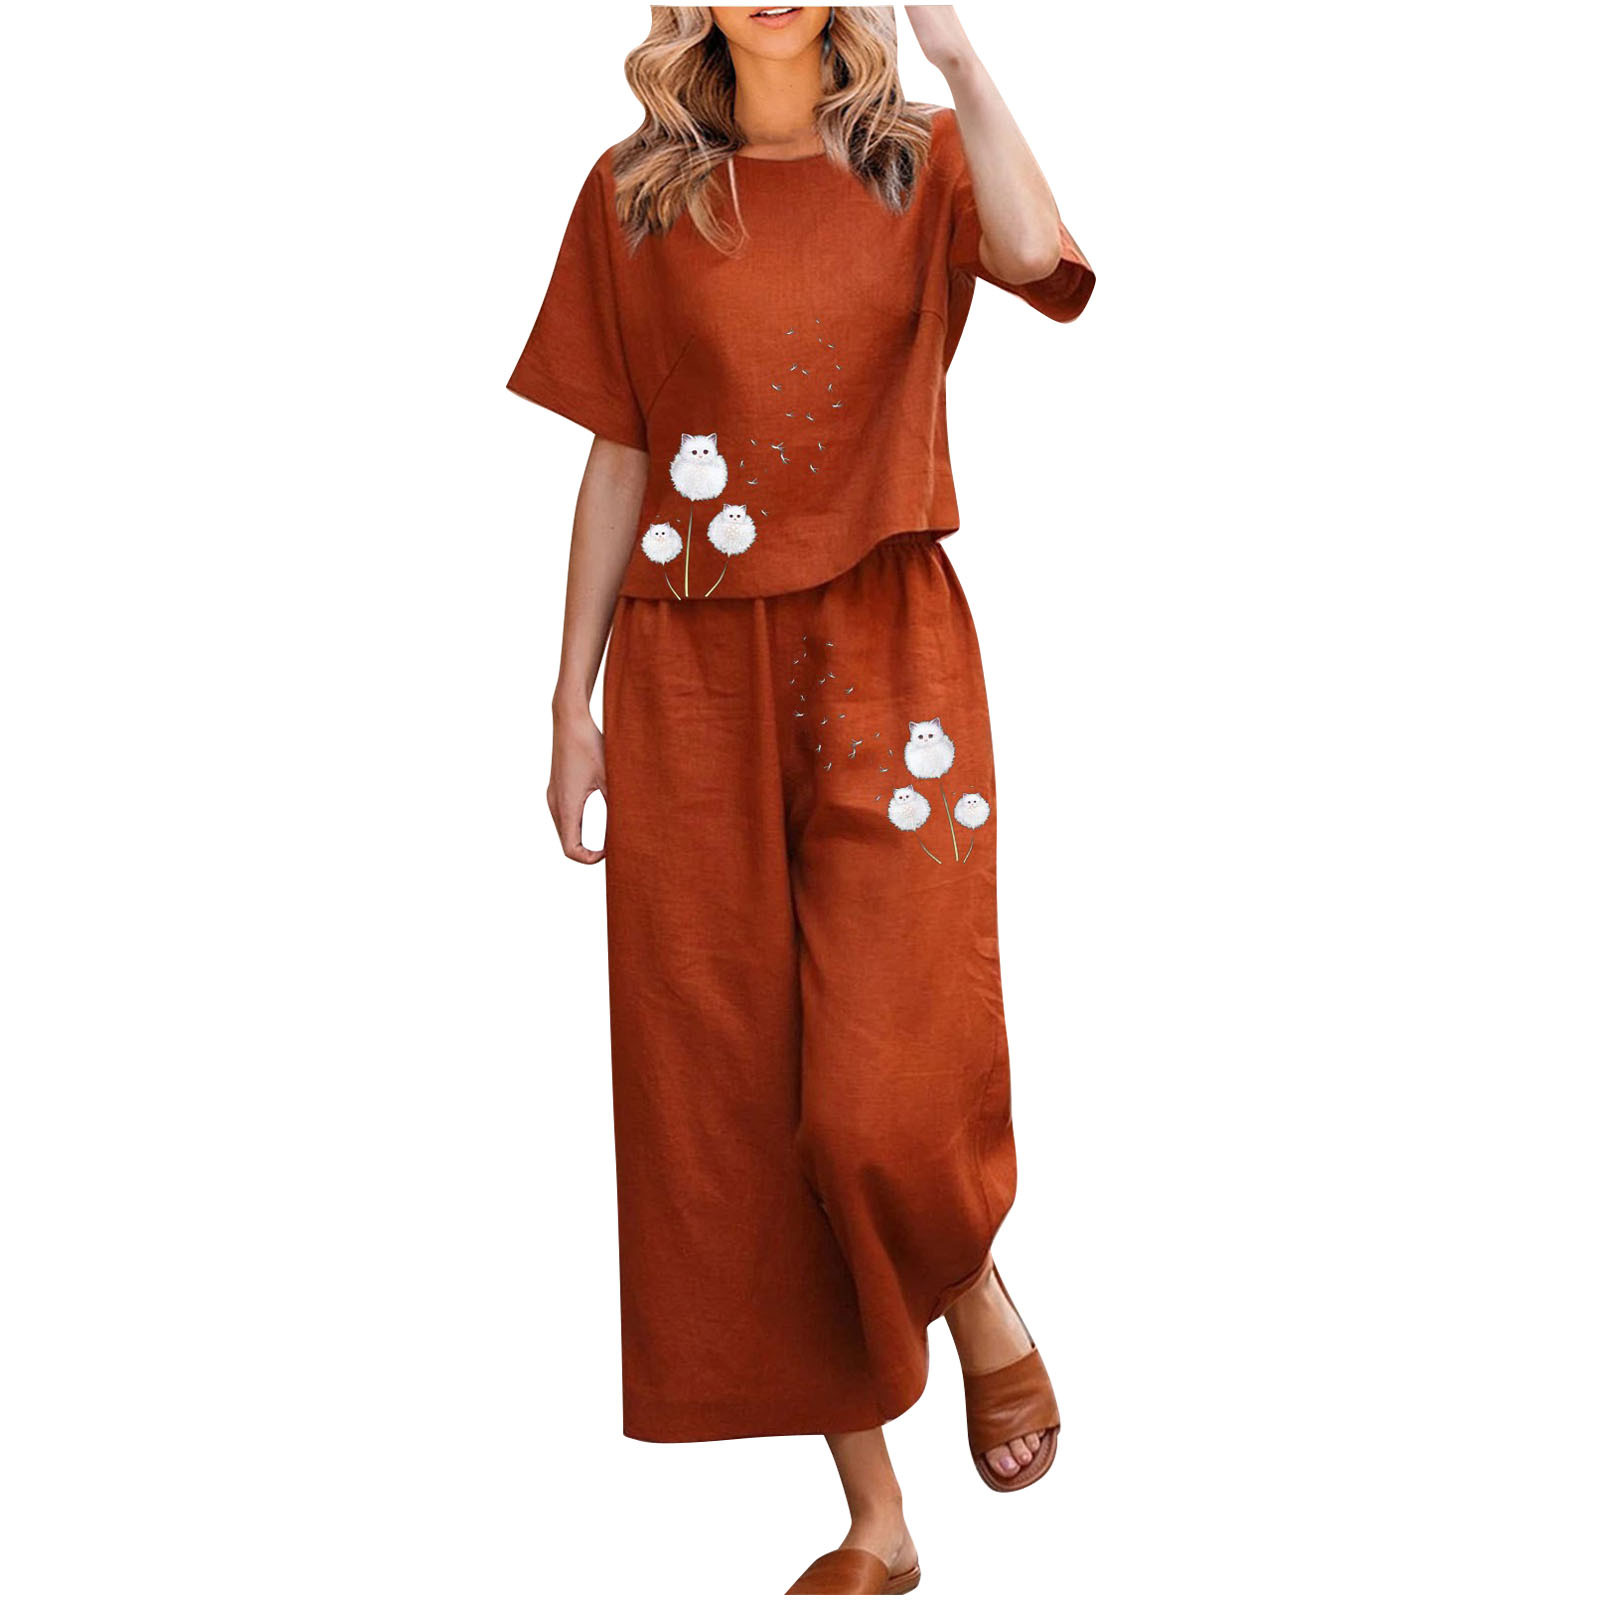 DDAPJ pyju Plus Size Linen Sets for Women,2 Piece Casual Outfits Short ...